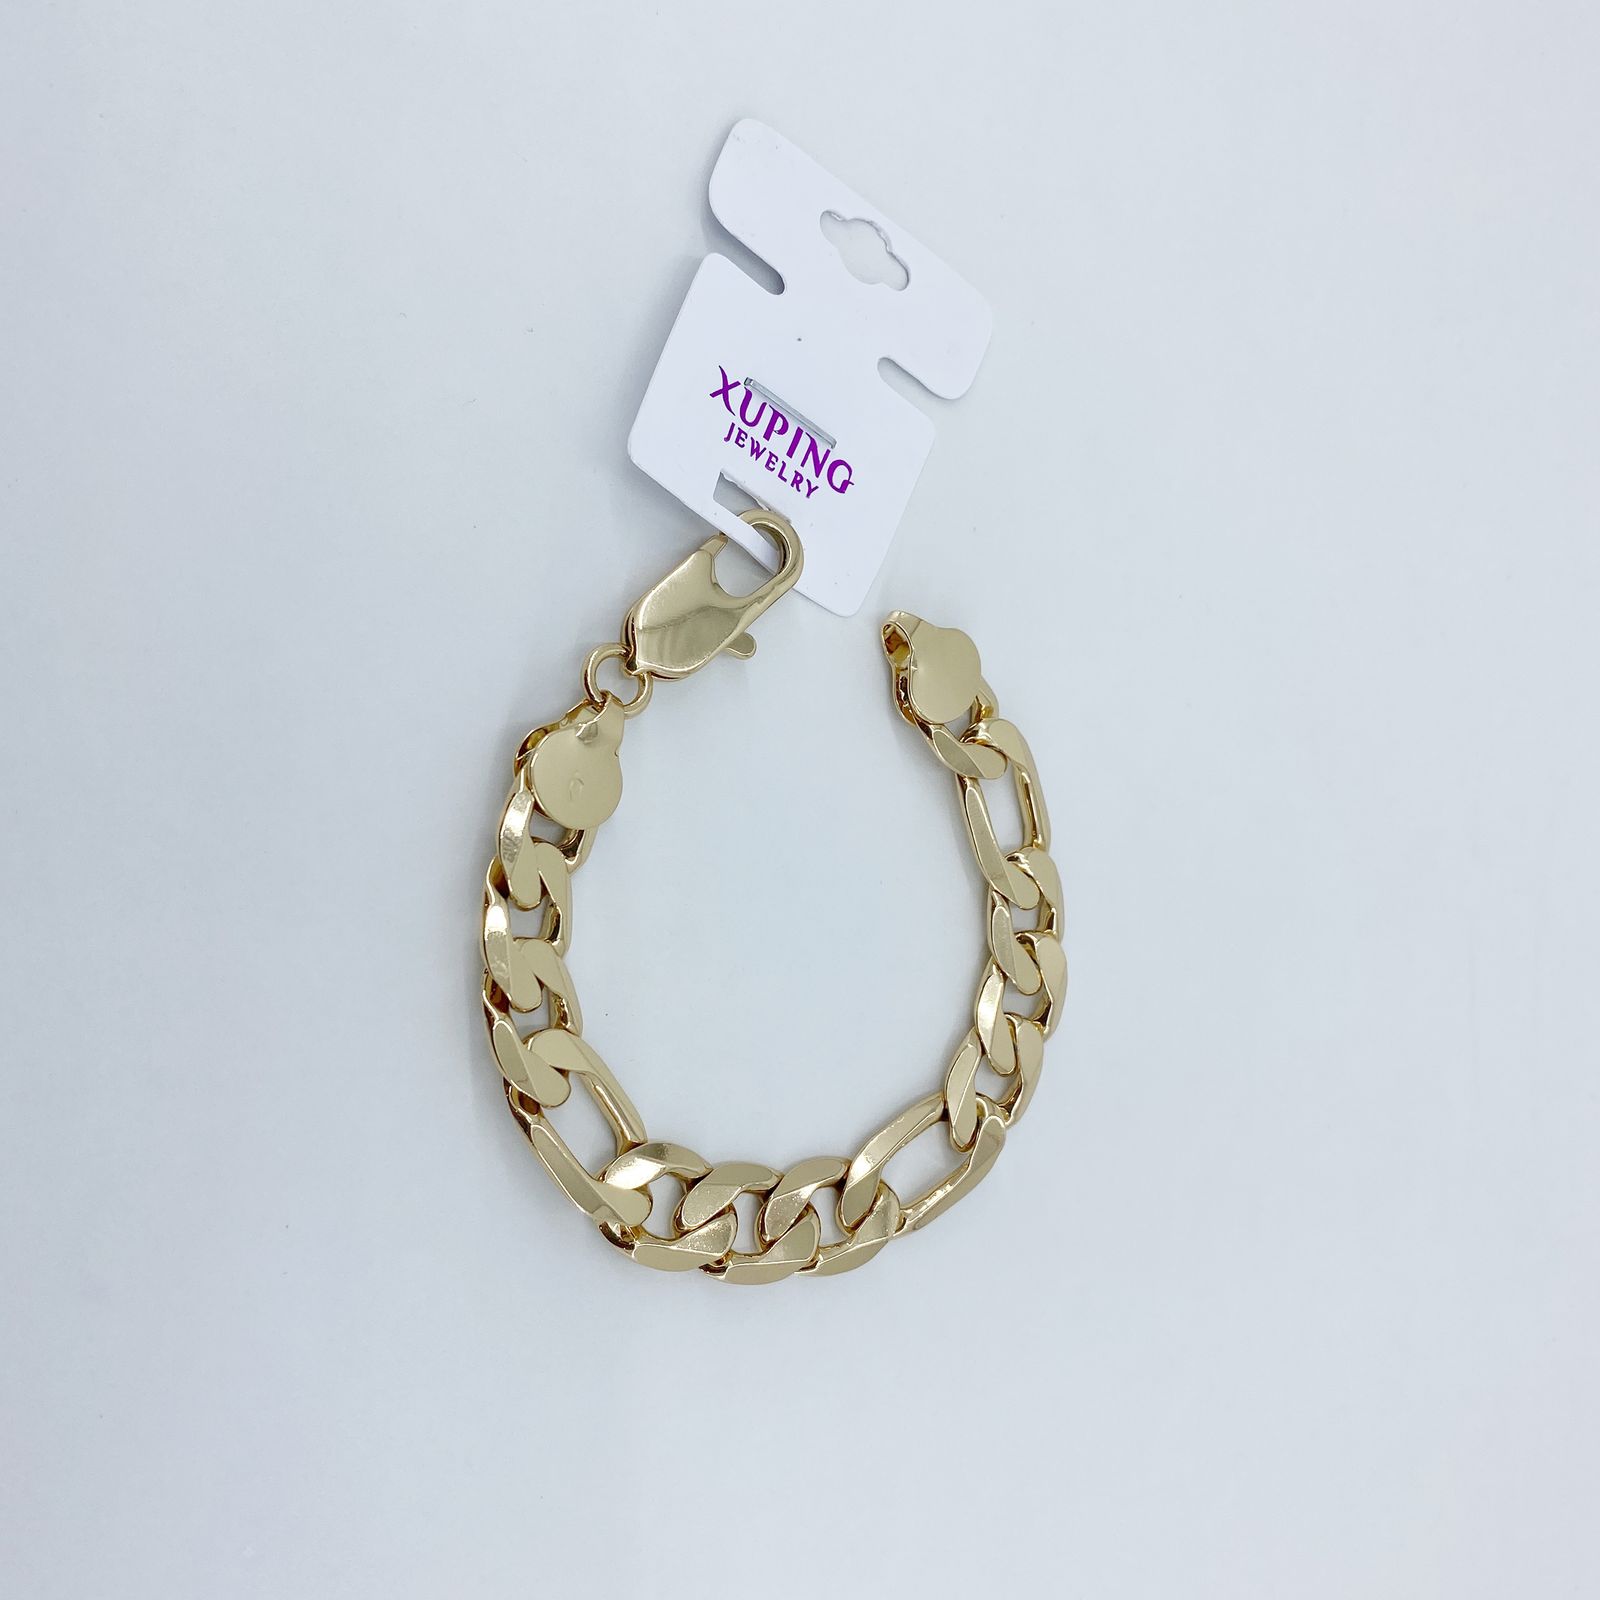 دستبند زنانه ژوپینگ کد B3020 -  - 3